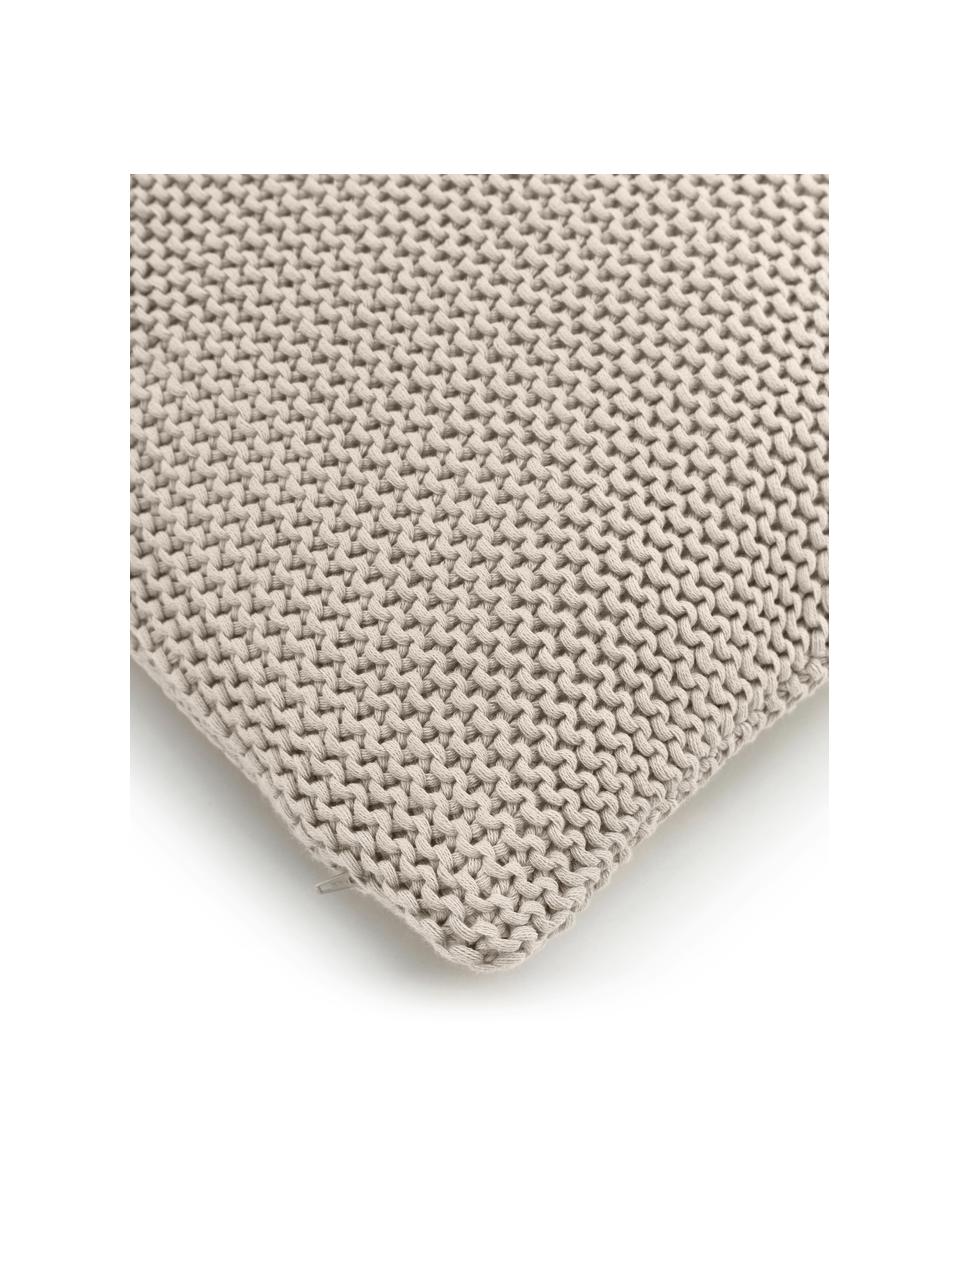 Pletený povlak na polštář z organické bavlny Adalyn, 100 % bavlna, s certifikátem GOTS, Béžová, Š 30 cm, D 50 cm